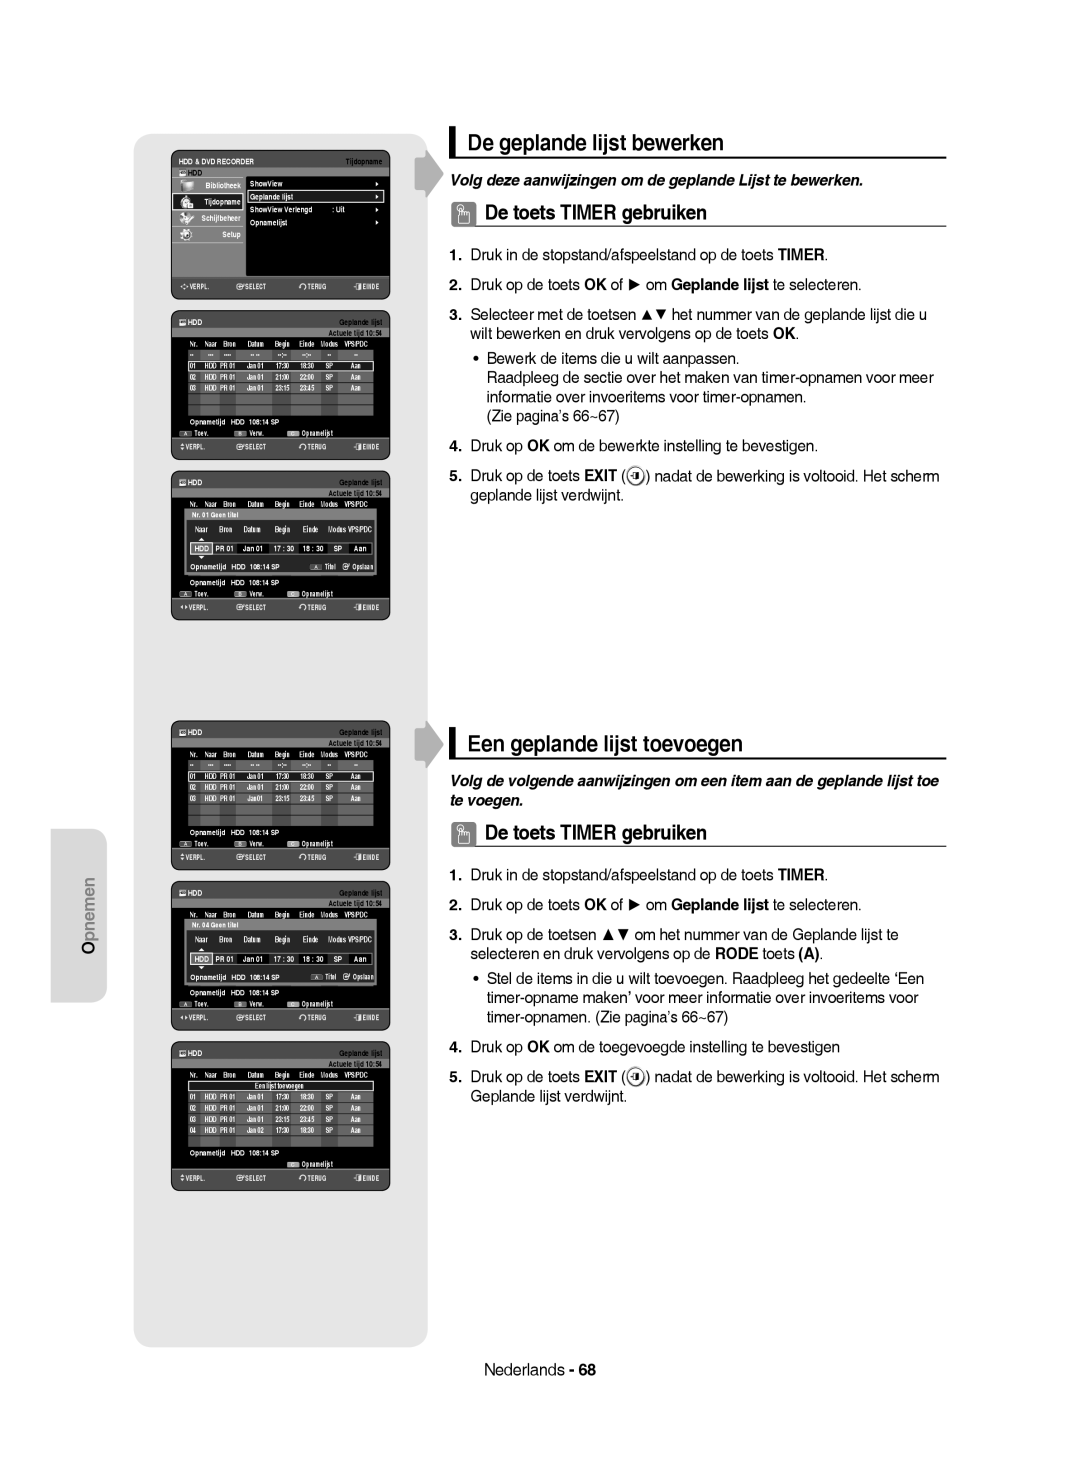 Samsung DVD-HR750/XEB, DVD-HR750/XEG manual De geplande lijst bewerken, Een geplande lijst toevoegen, Einde, Jan 18 3 Aan 